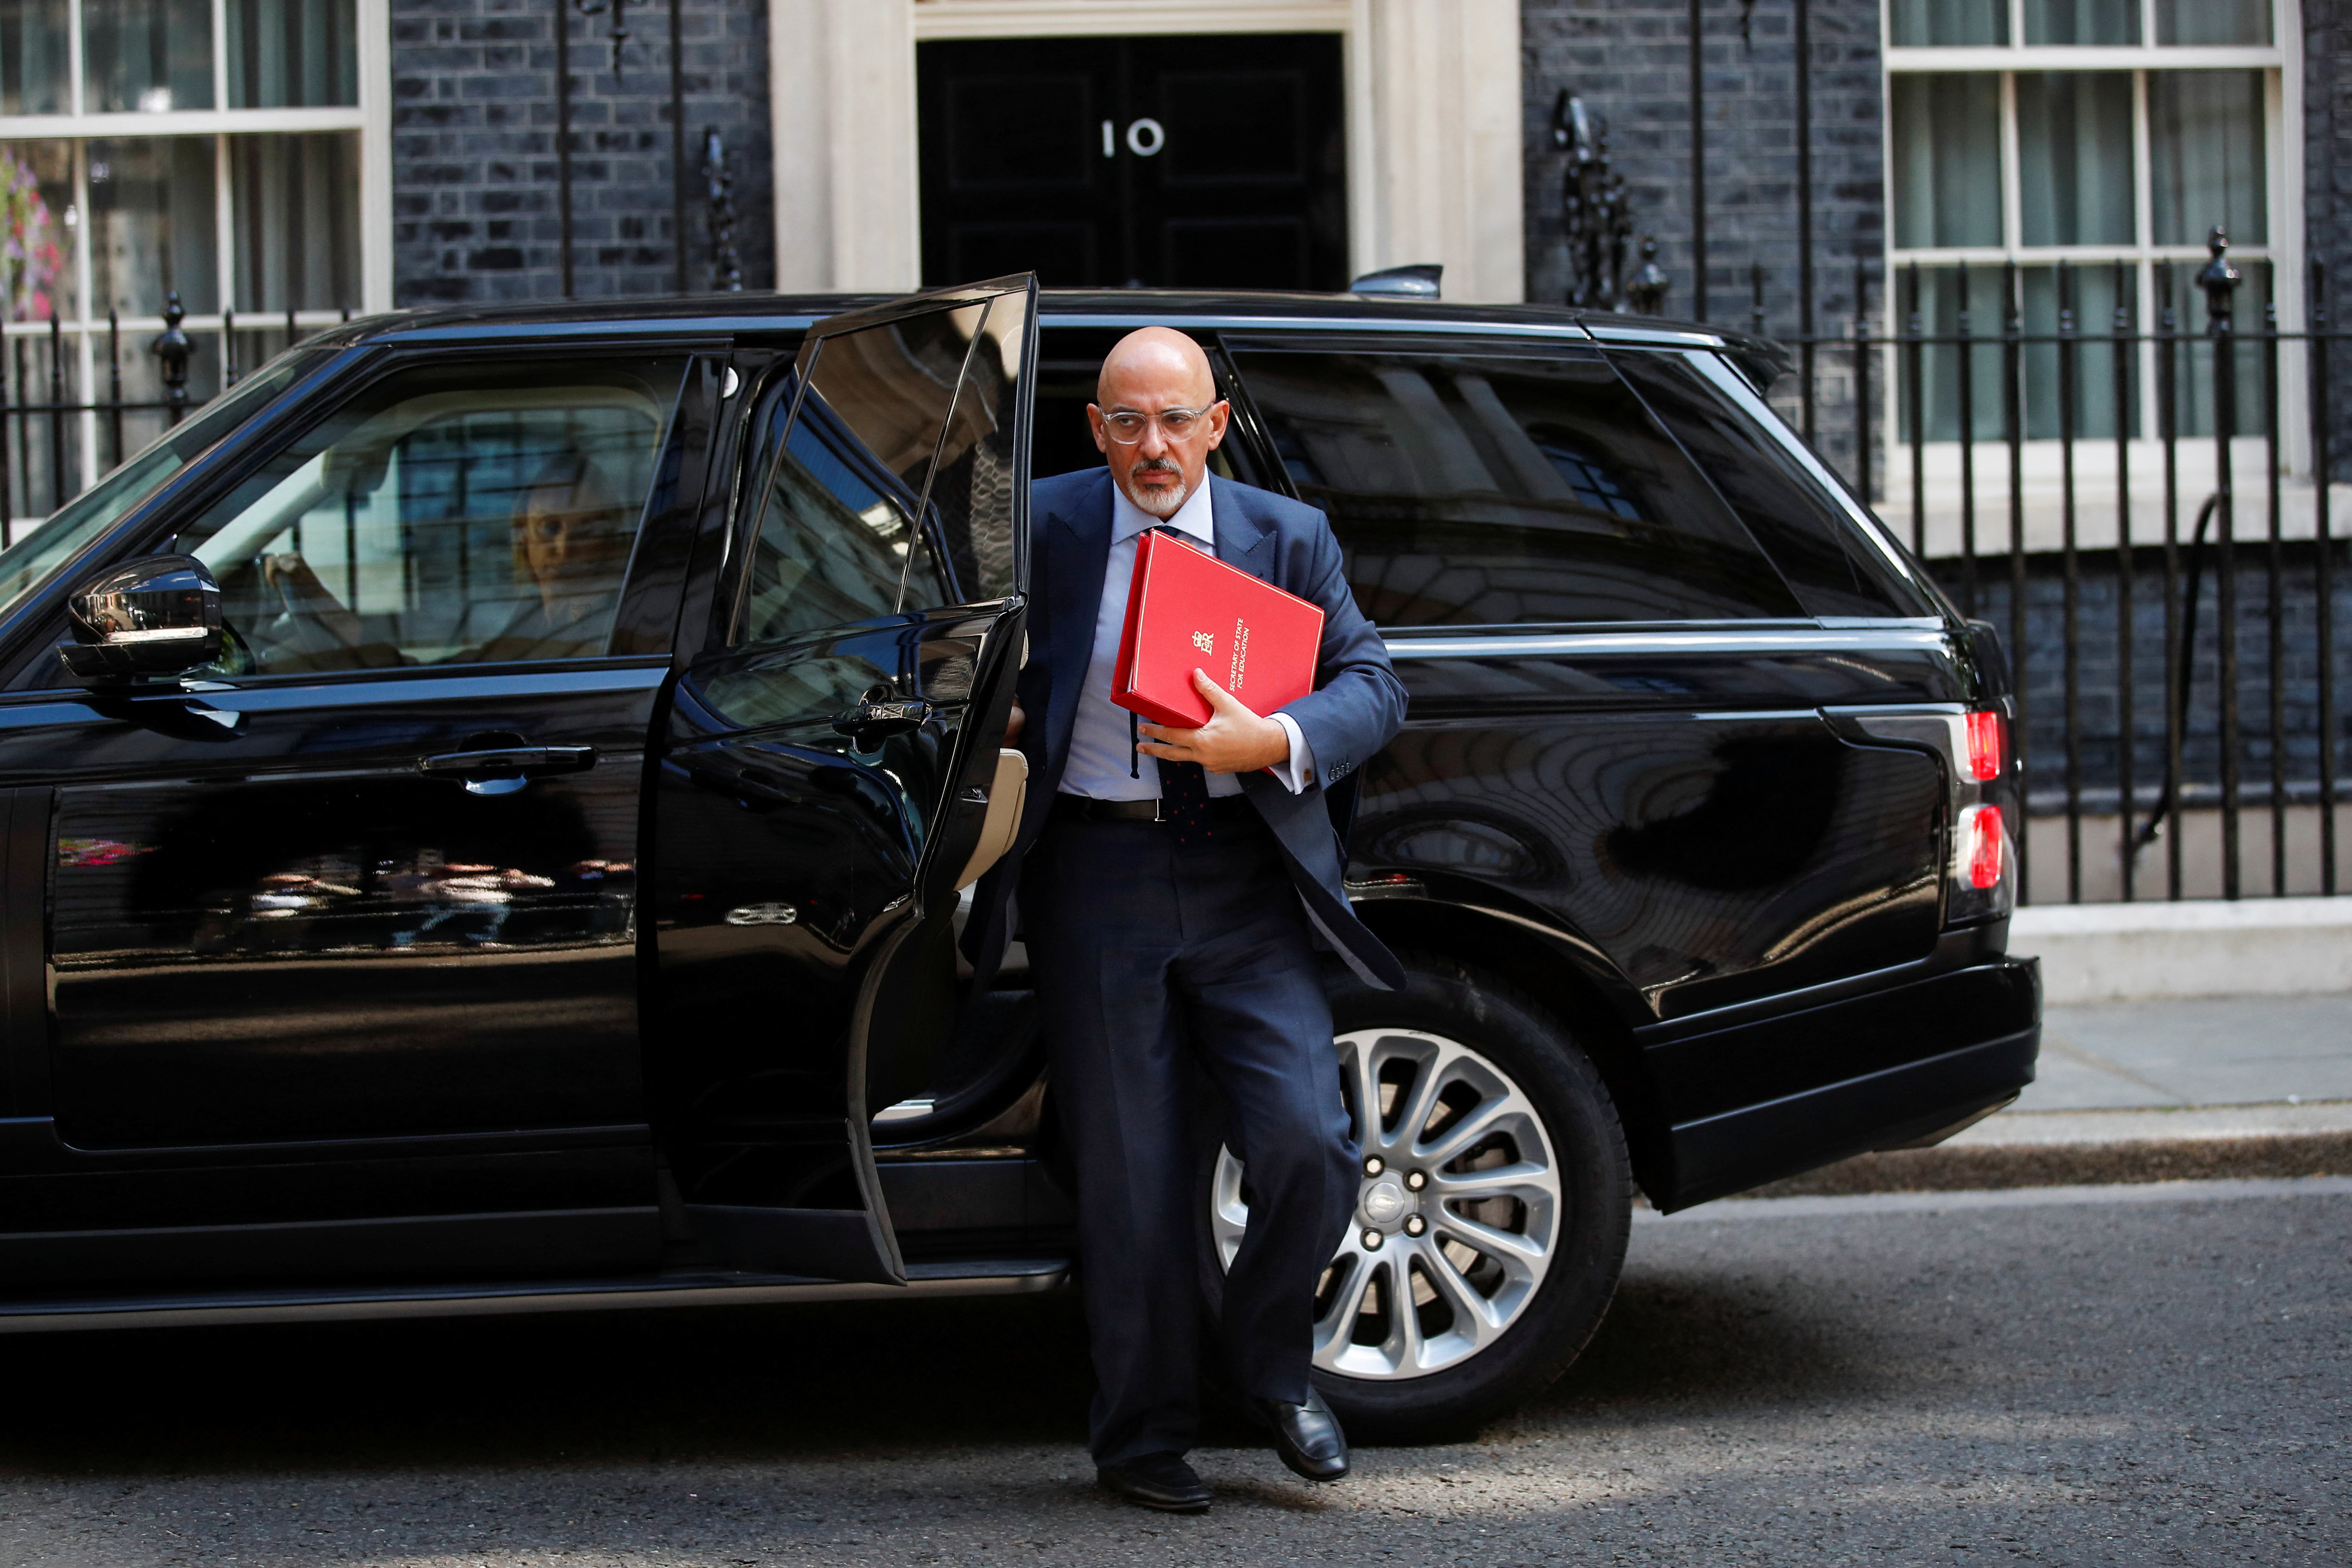 El ex secretario de Educación británico, ahora a cargo de la cartera de Economía, Nadhim Zahawi, llega antes de una reunión semanal del gabinete en el número 10 de Downing Street, en Londres, Gran Bretaña, el 5 de julio de 2022.. REUTERS/Peter Nicholls